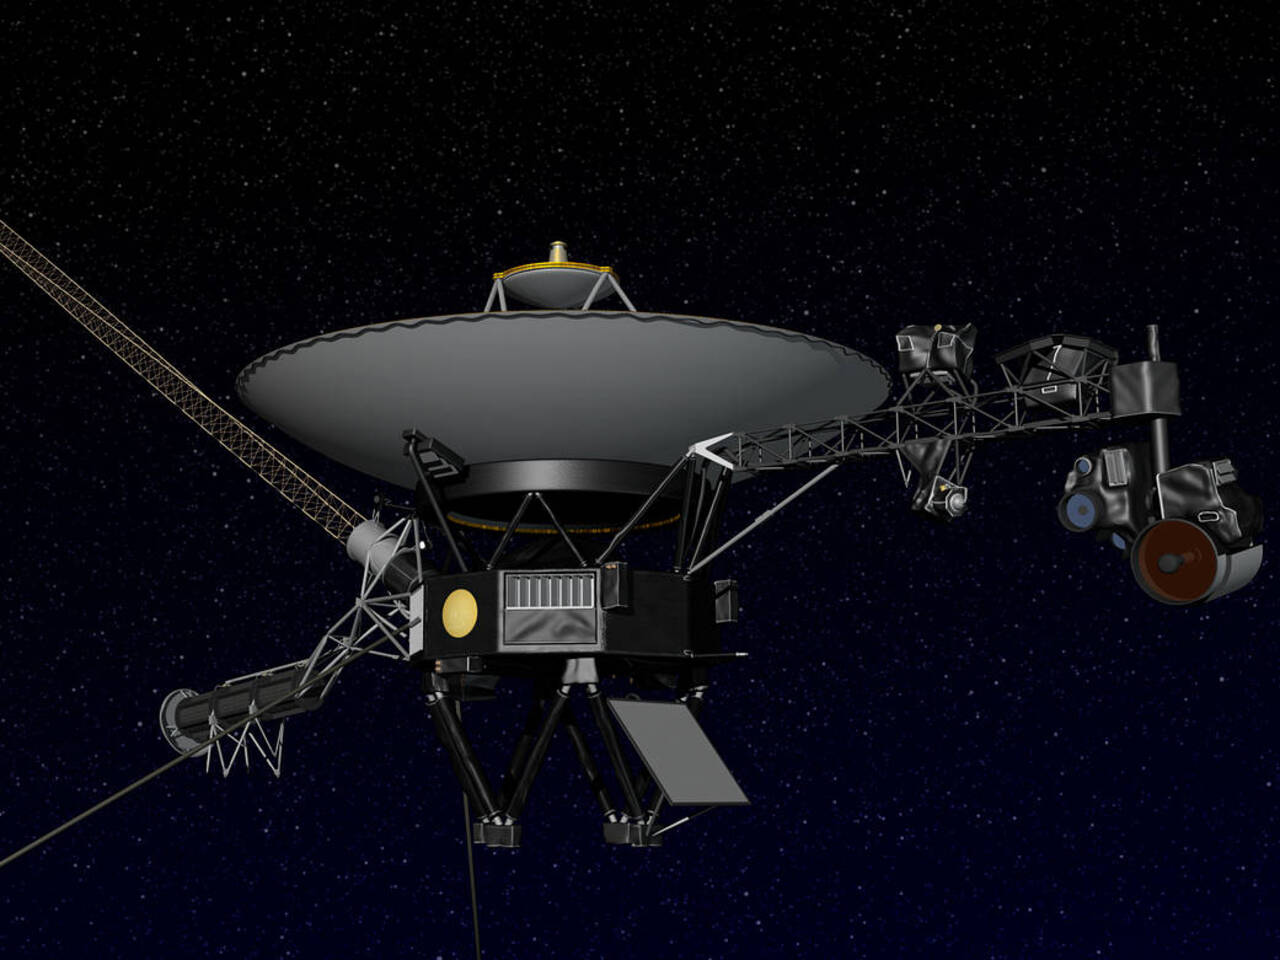 Voyager 2 : Comunicazione Interrotta con la Navicella a causa di un Errore di Puntamento dell